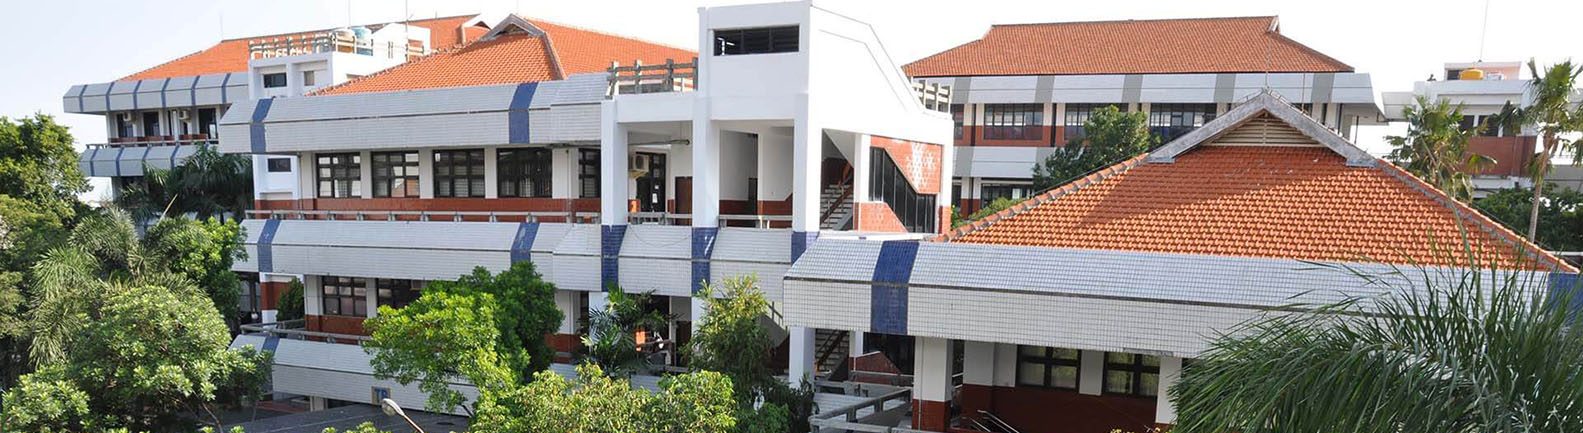 Gedung Fakultas Teknik Universitas Surabaya